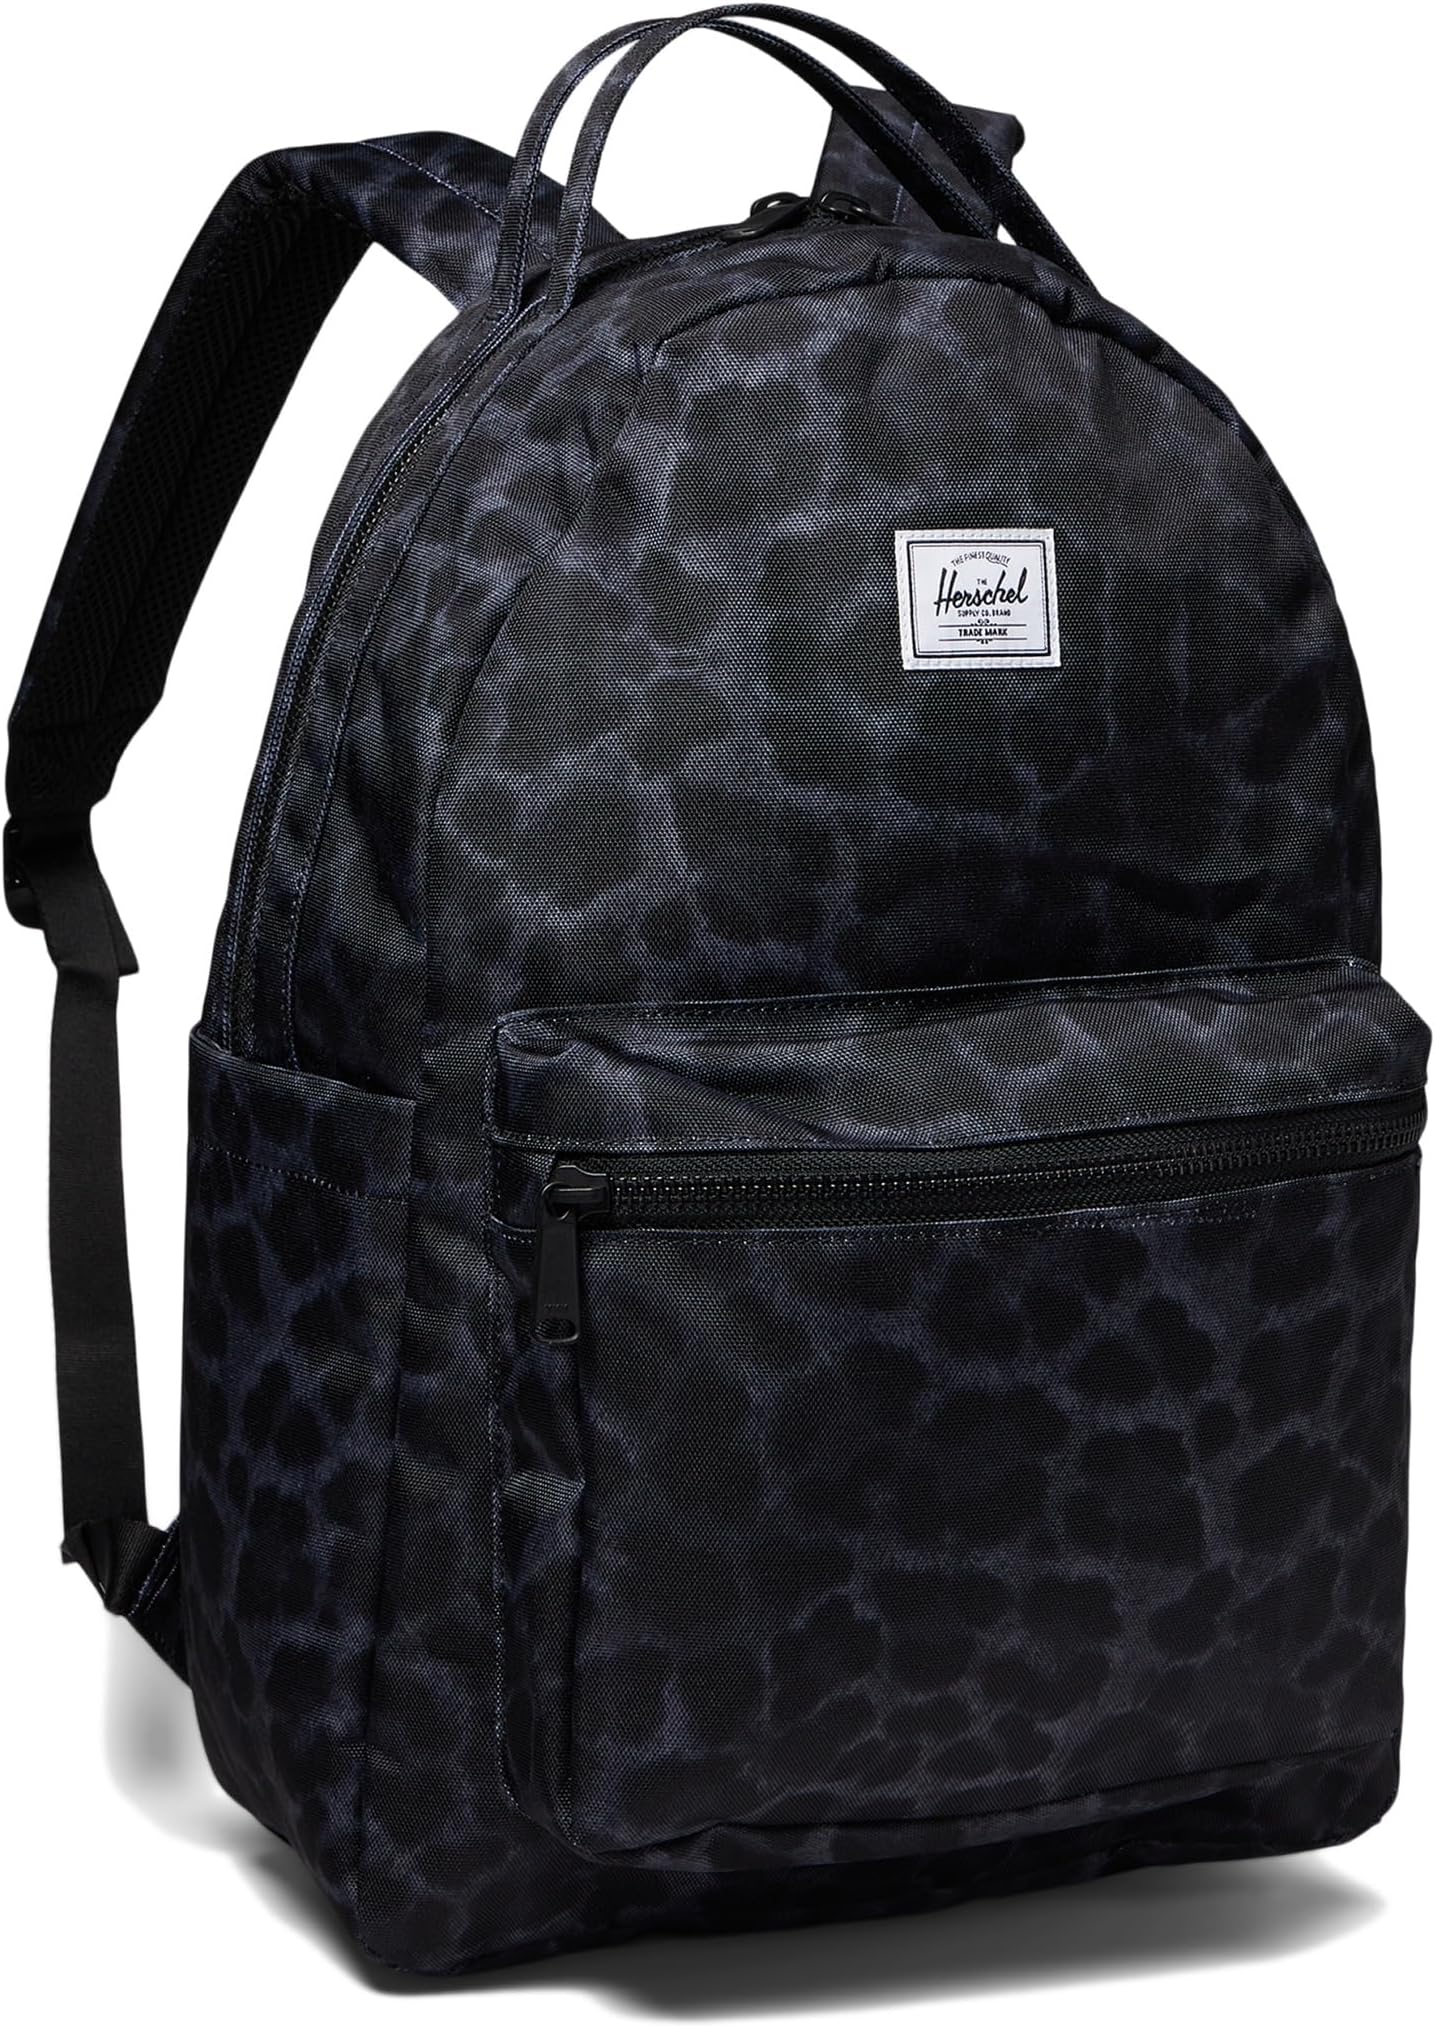 Рюкзак Nova Backpack Herschel Supply Co., цвет Digi Leopard Black magma digi beatpack l black khaki green